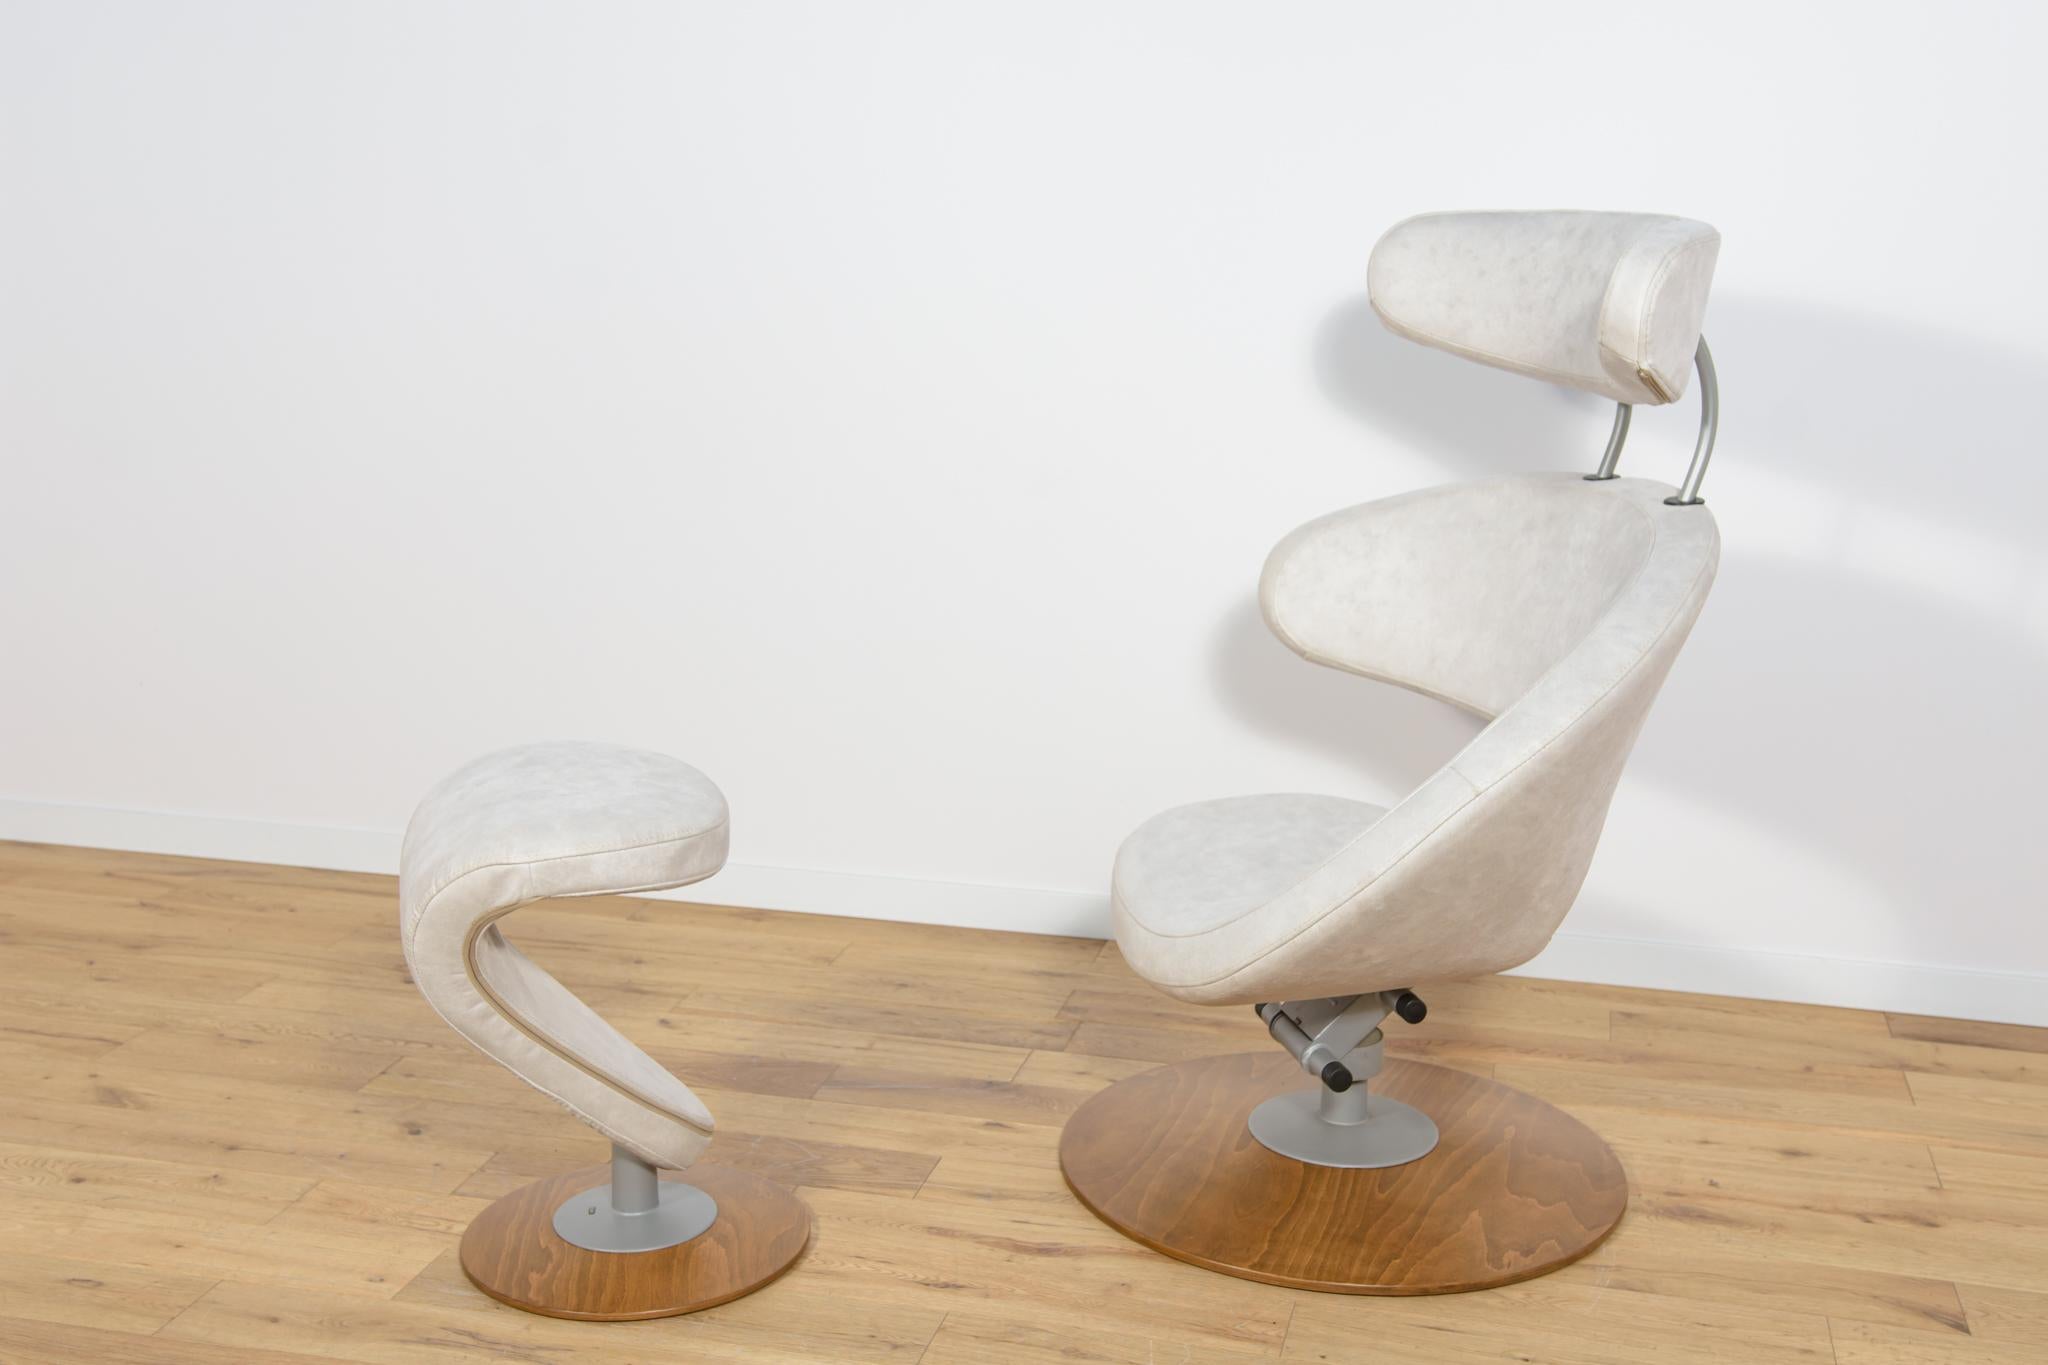 Ergonomischer Sessel und Hocker Modell Peel, entworfen von Olav Eldoy für die norwegische Firma Stokke im ersten Jahrzehnt des 21. Jahrhunderts. Ein stilvoller Sessel mit einer skulpturalen Dimension, hat ein Holzgestell. Das ganze Gebäude wurde